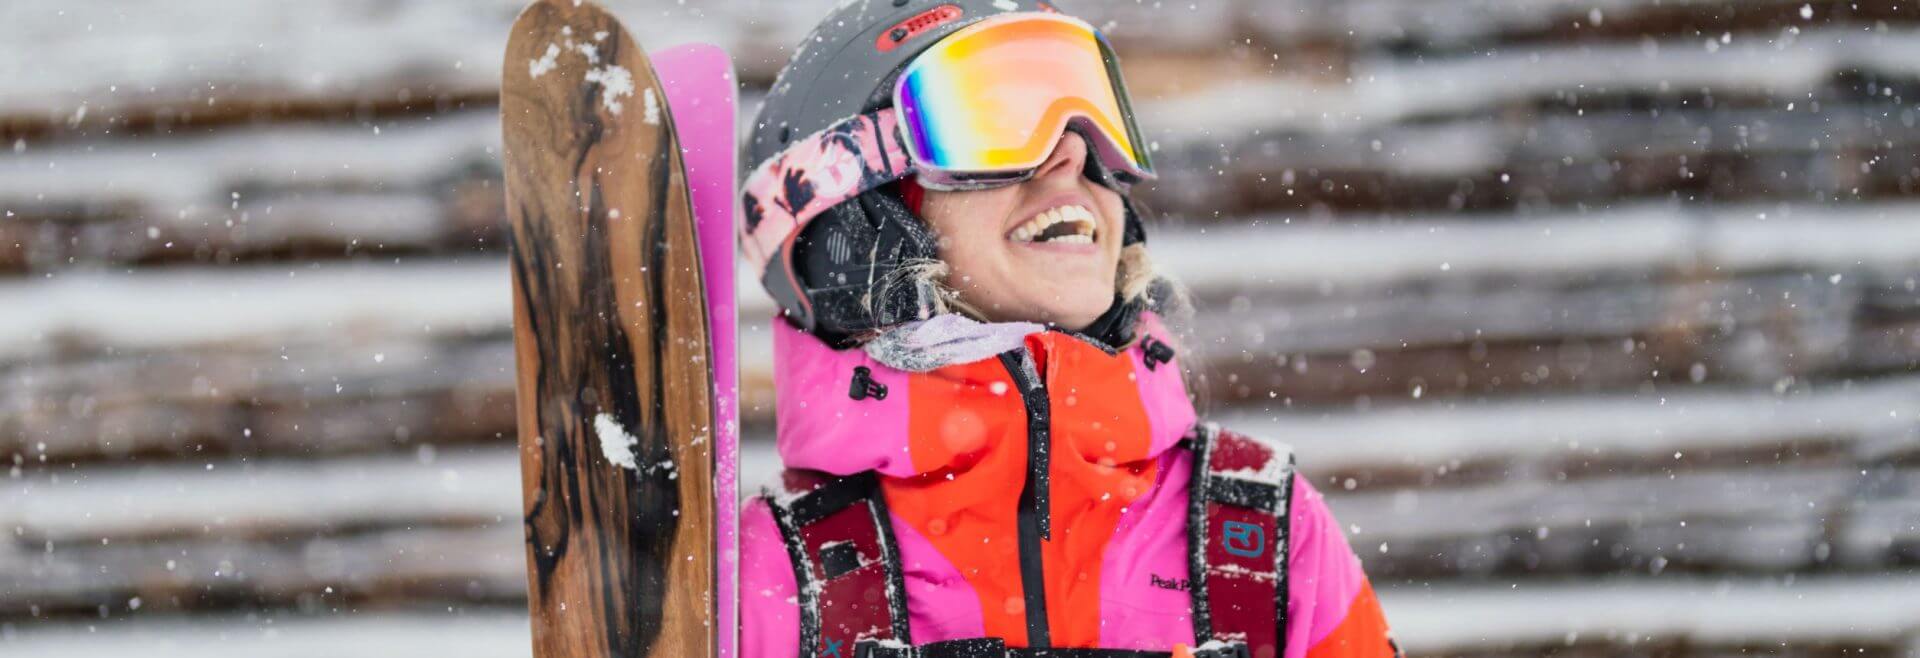 Skifahrerin freut sich über Schneefall